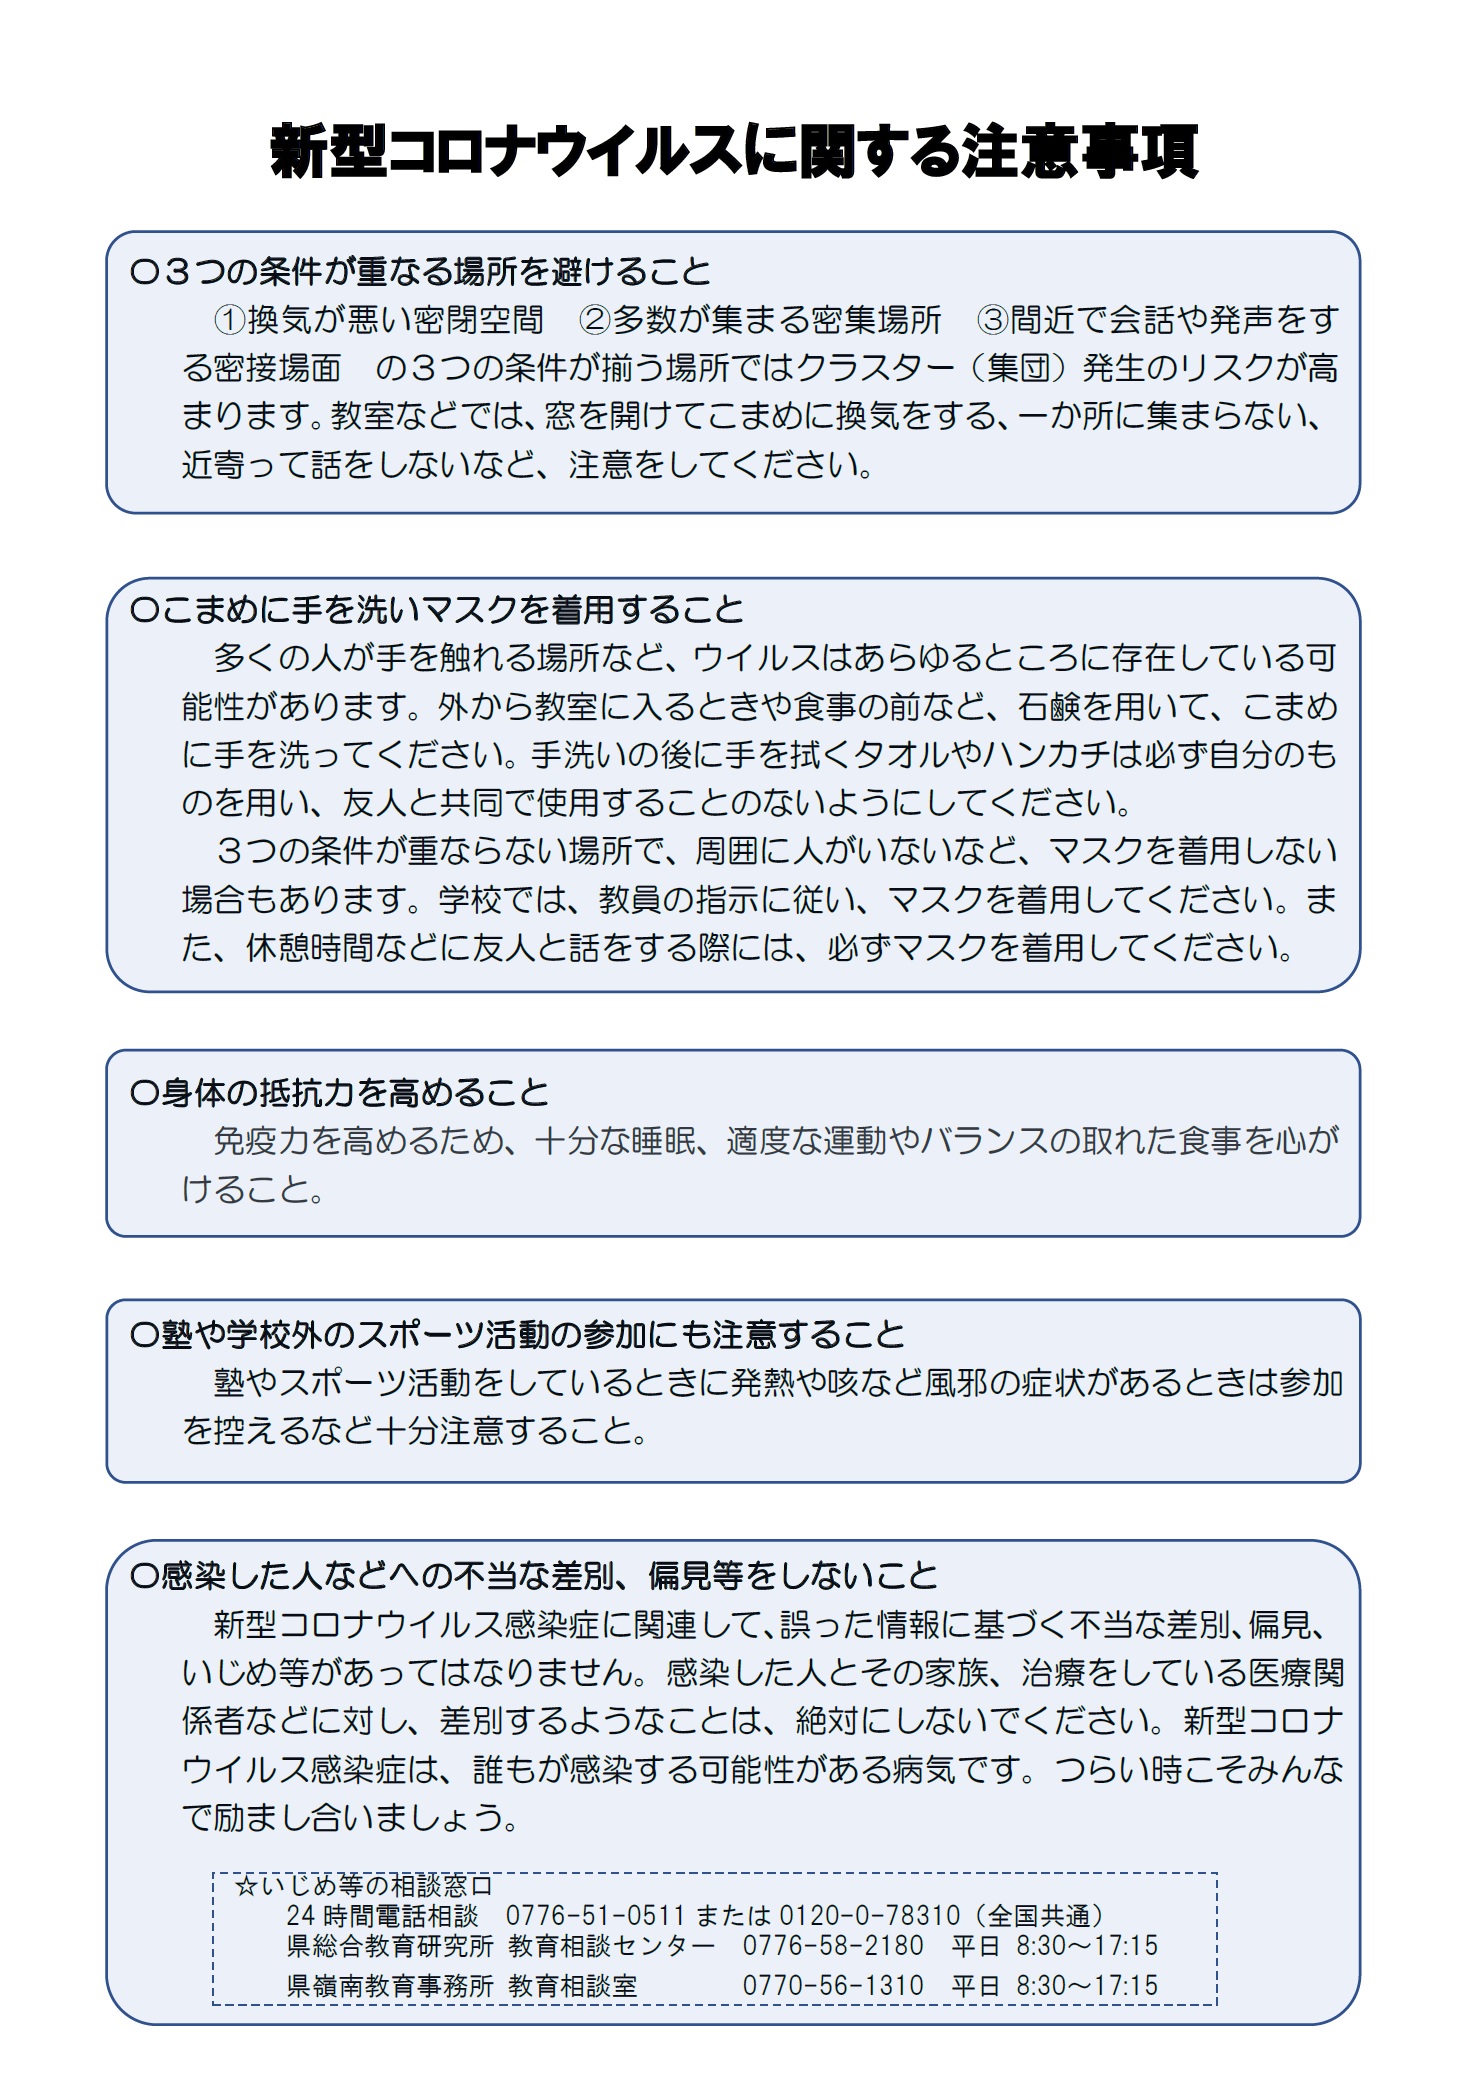 福井県教育委員会から、２学期始業に当たっての新型コロナウイルス感染症対策についてのお願い